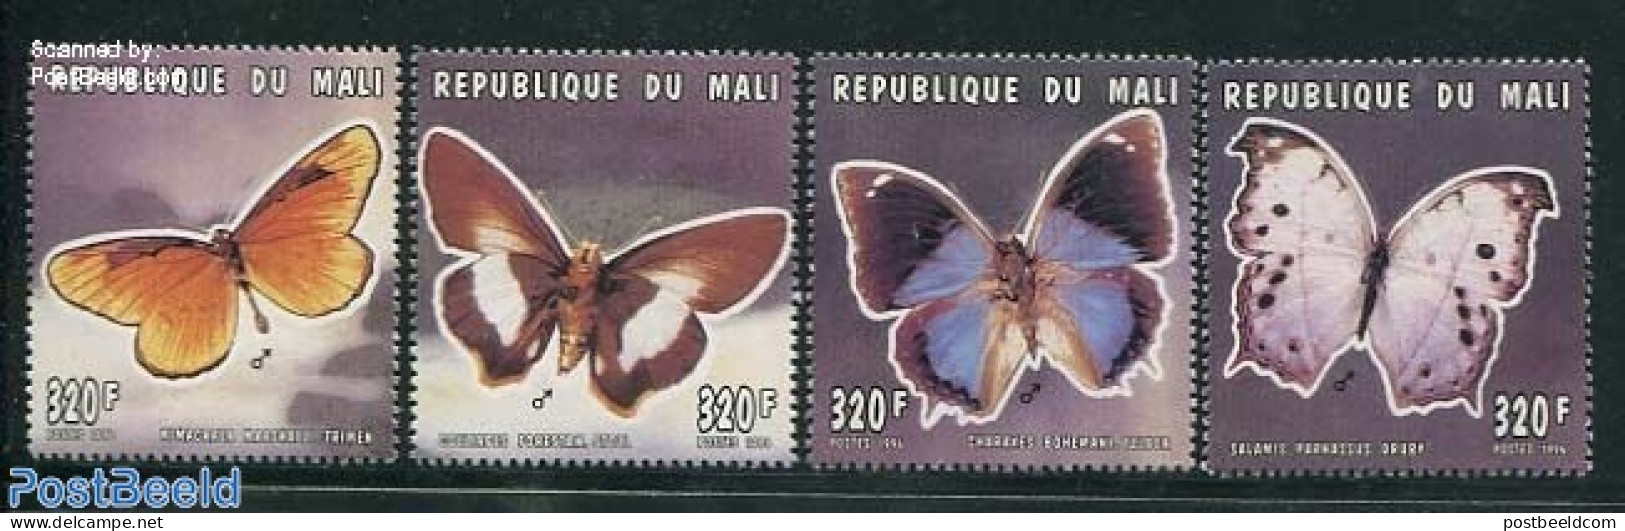 Mali 1996 Butterflies 4v, Mint NH, Nature - Butterflies - Malí (1959-...)